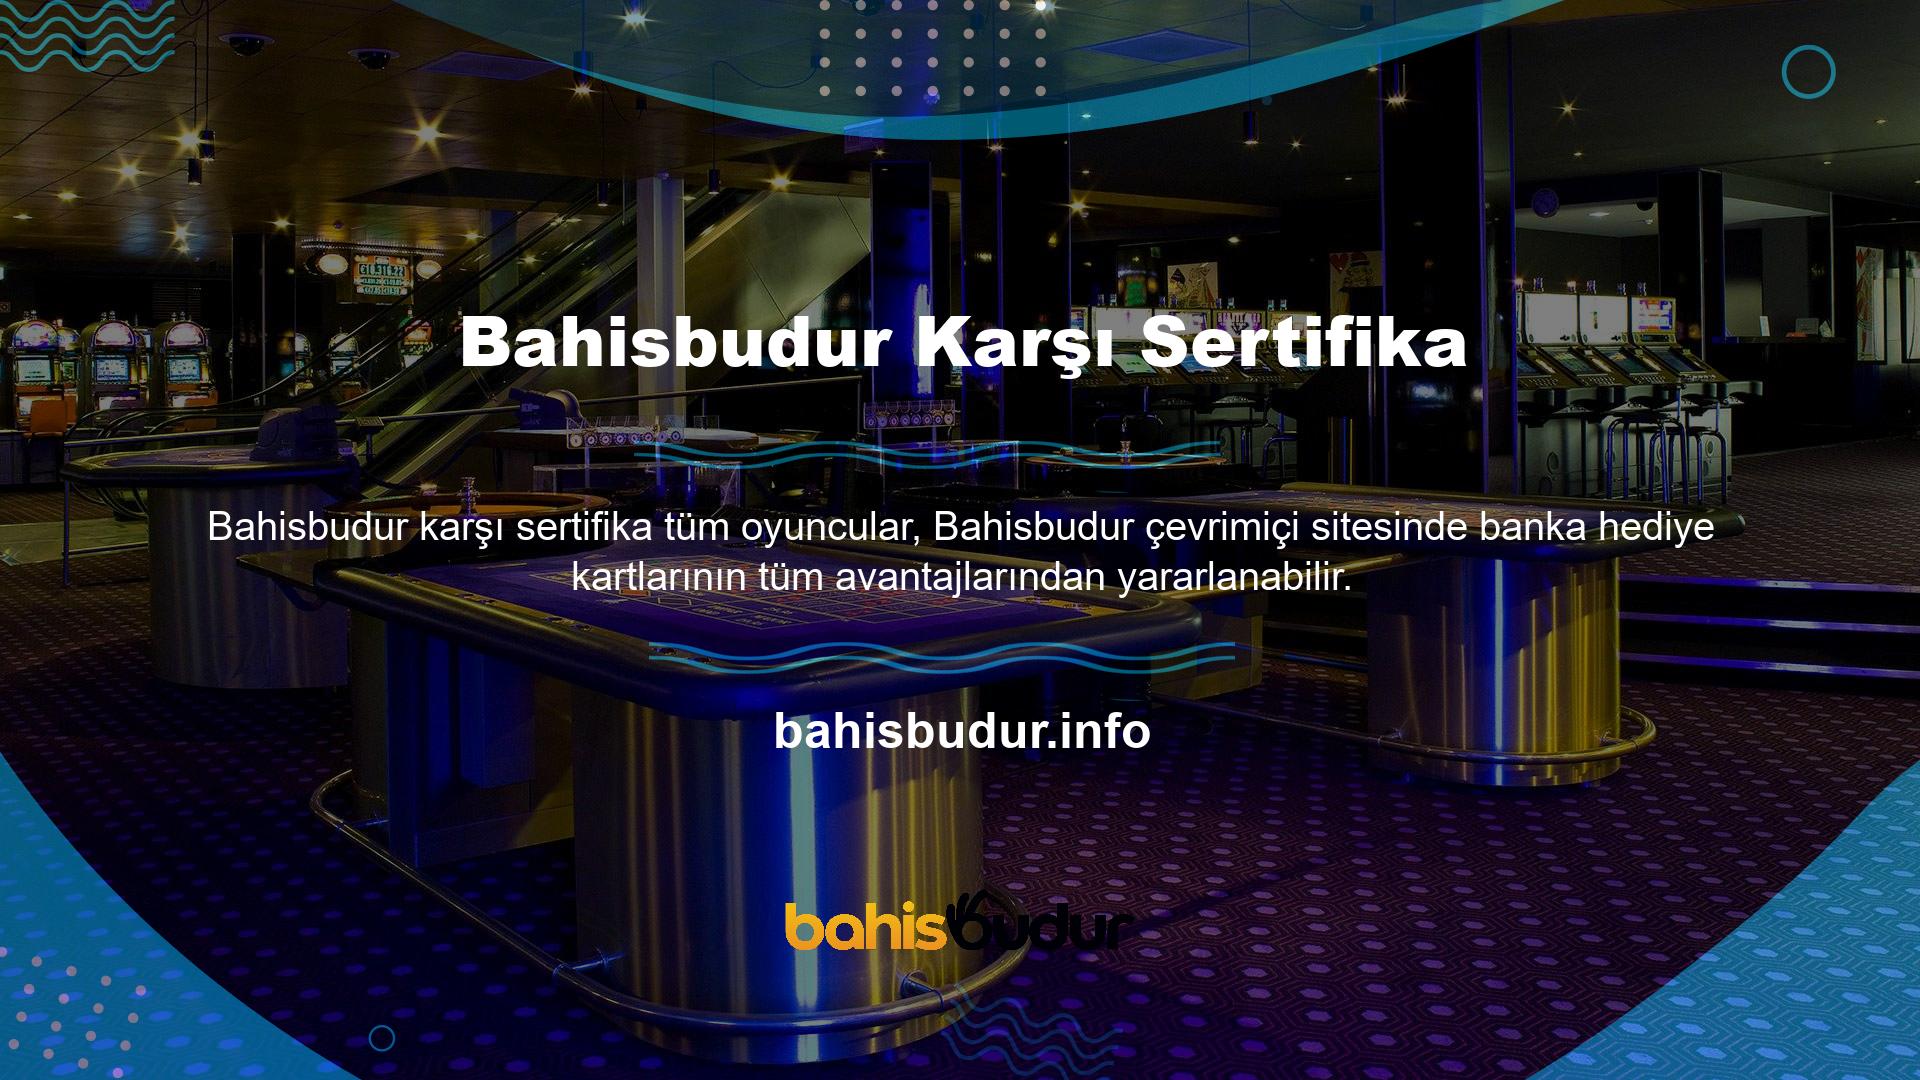 Bahisbudur Gişe Sertifikası, sektördeki en büyük casino merkezlerinden biridir ve öncelikle bu alanda lisanslanmıştır